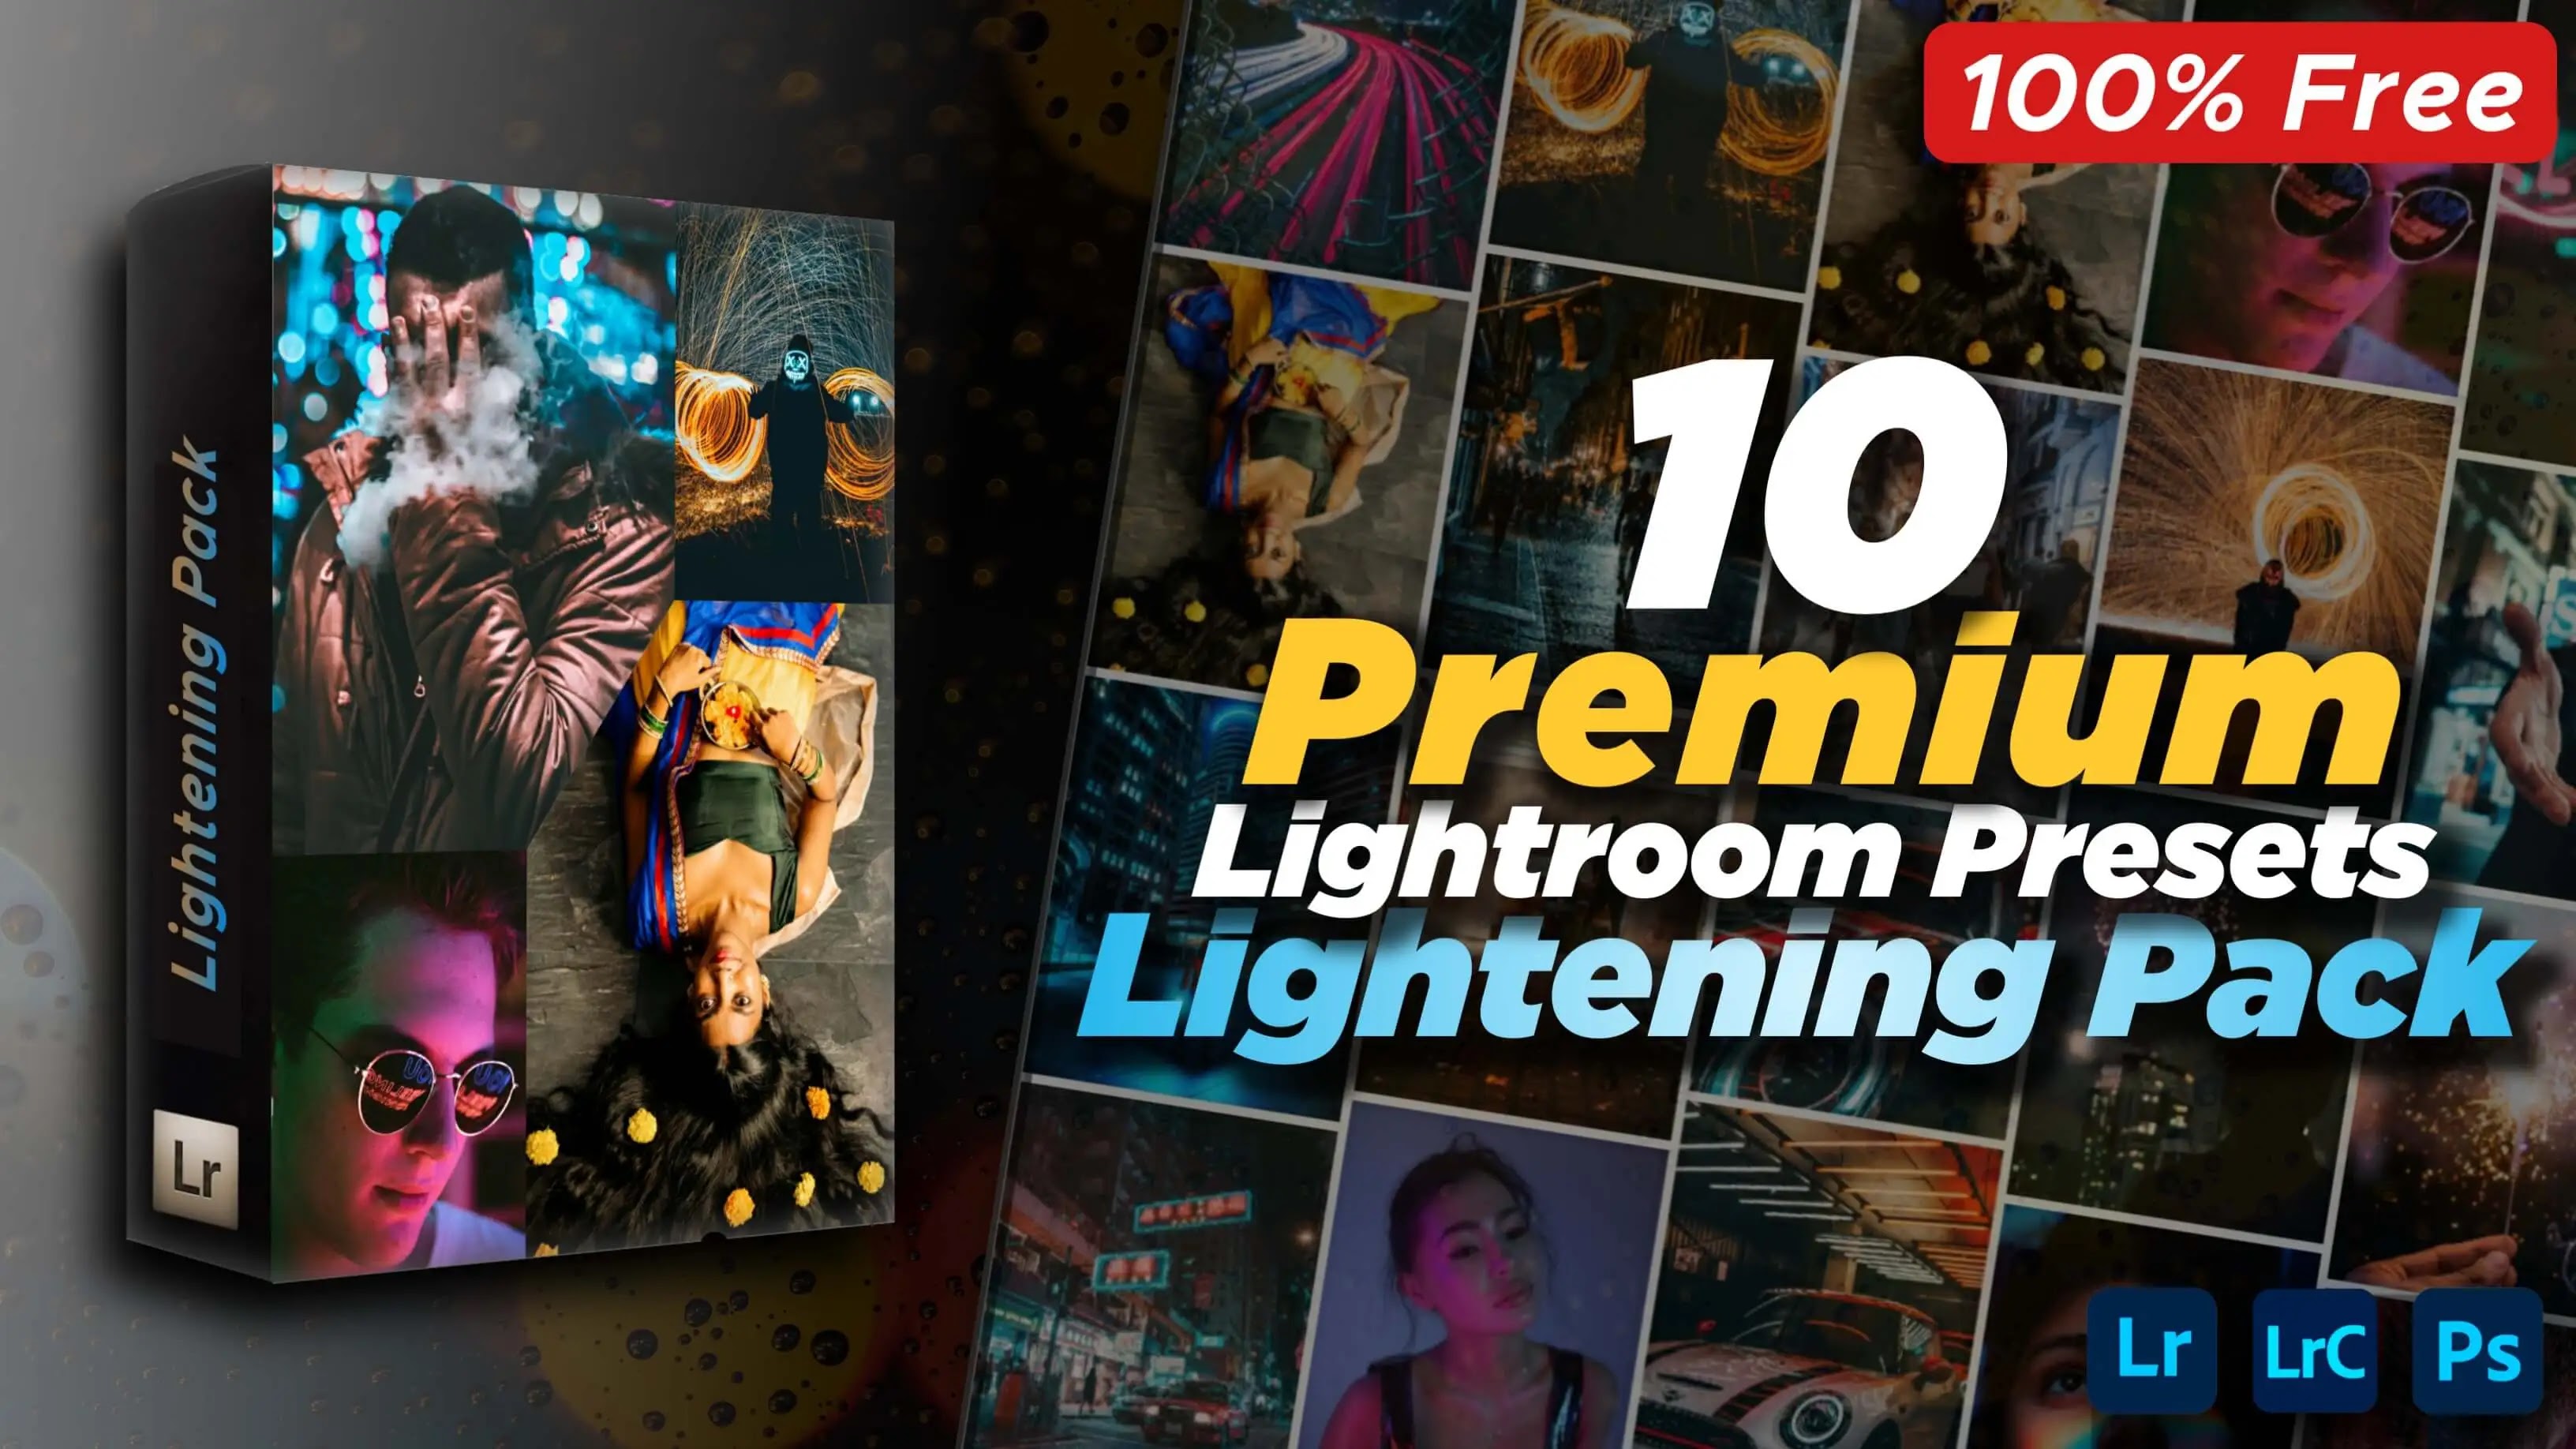 10 Best Lightroom Presets, Lightening Presets Pack, Free Lightroom Presets Pack, Lightroom Presets, Lightroom Presets Free Pack, Diwali Special Lightening Lightroom Presets Pack